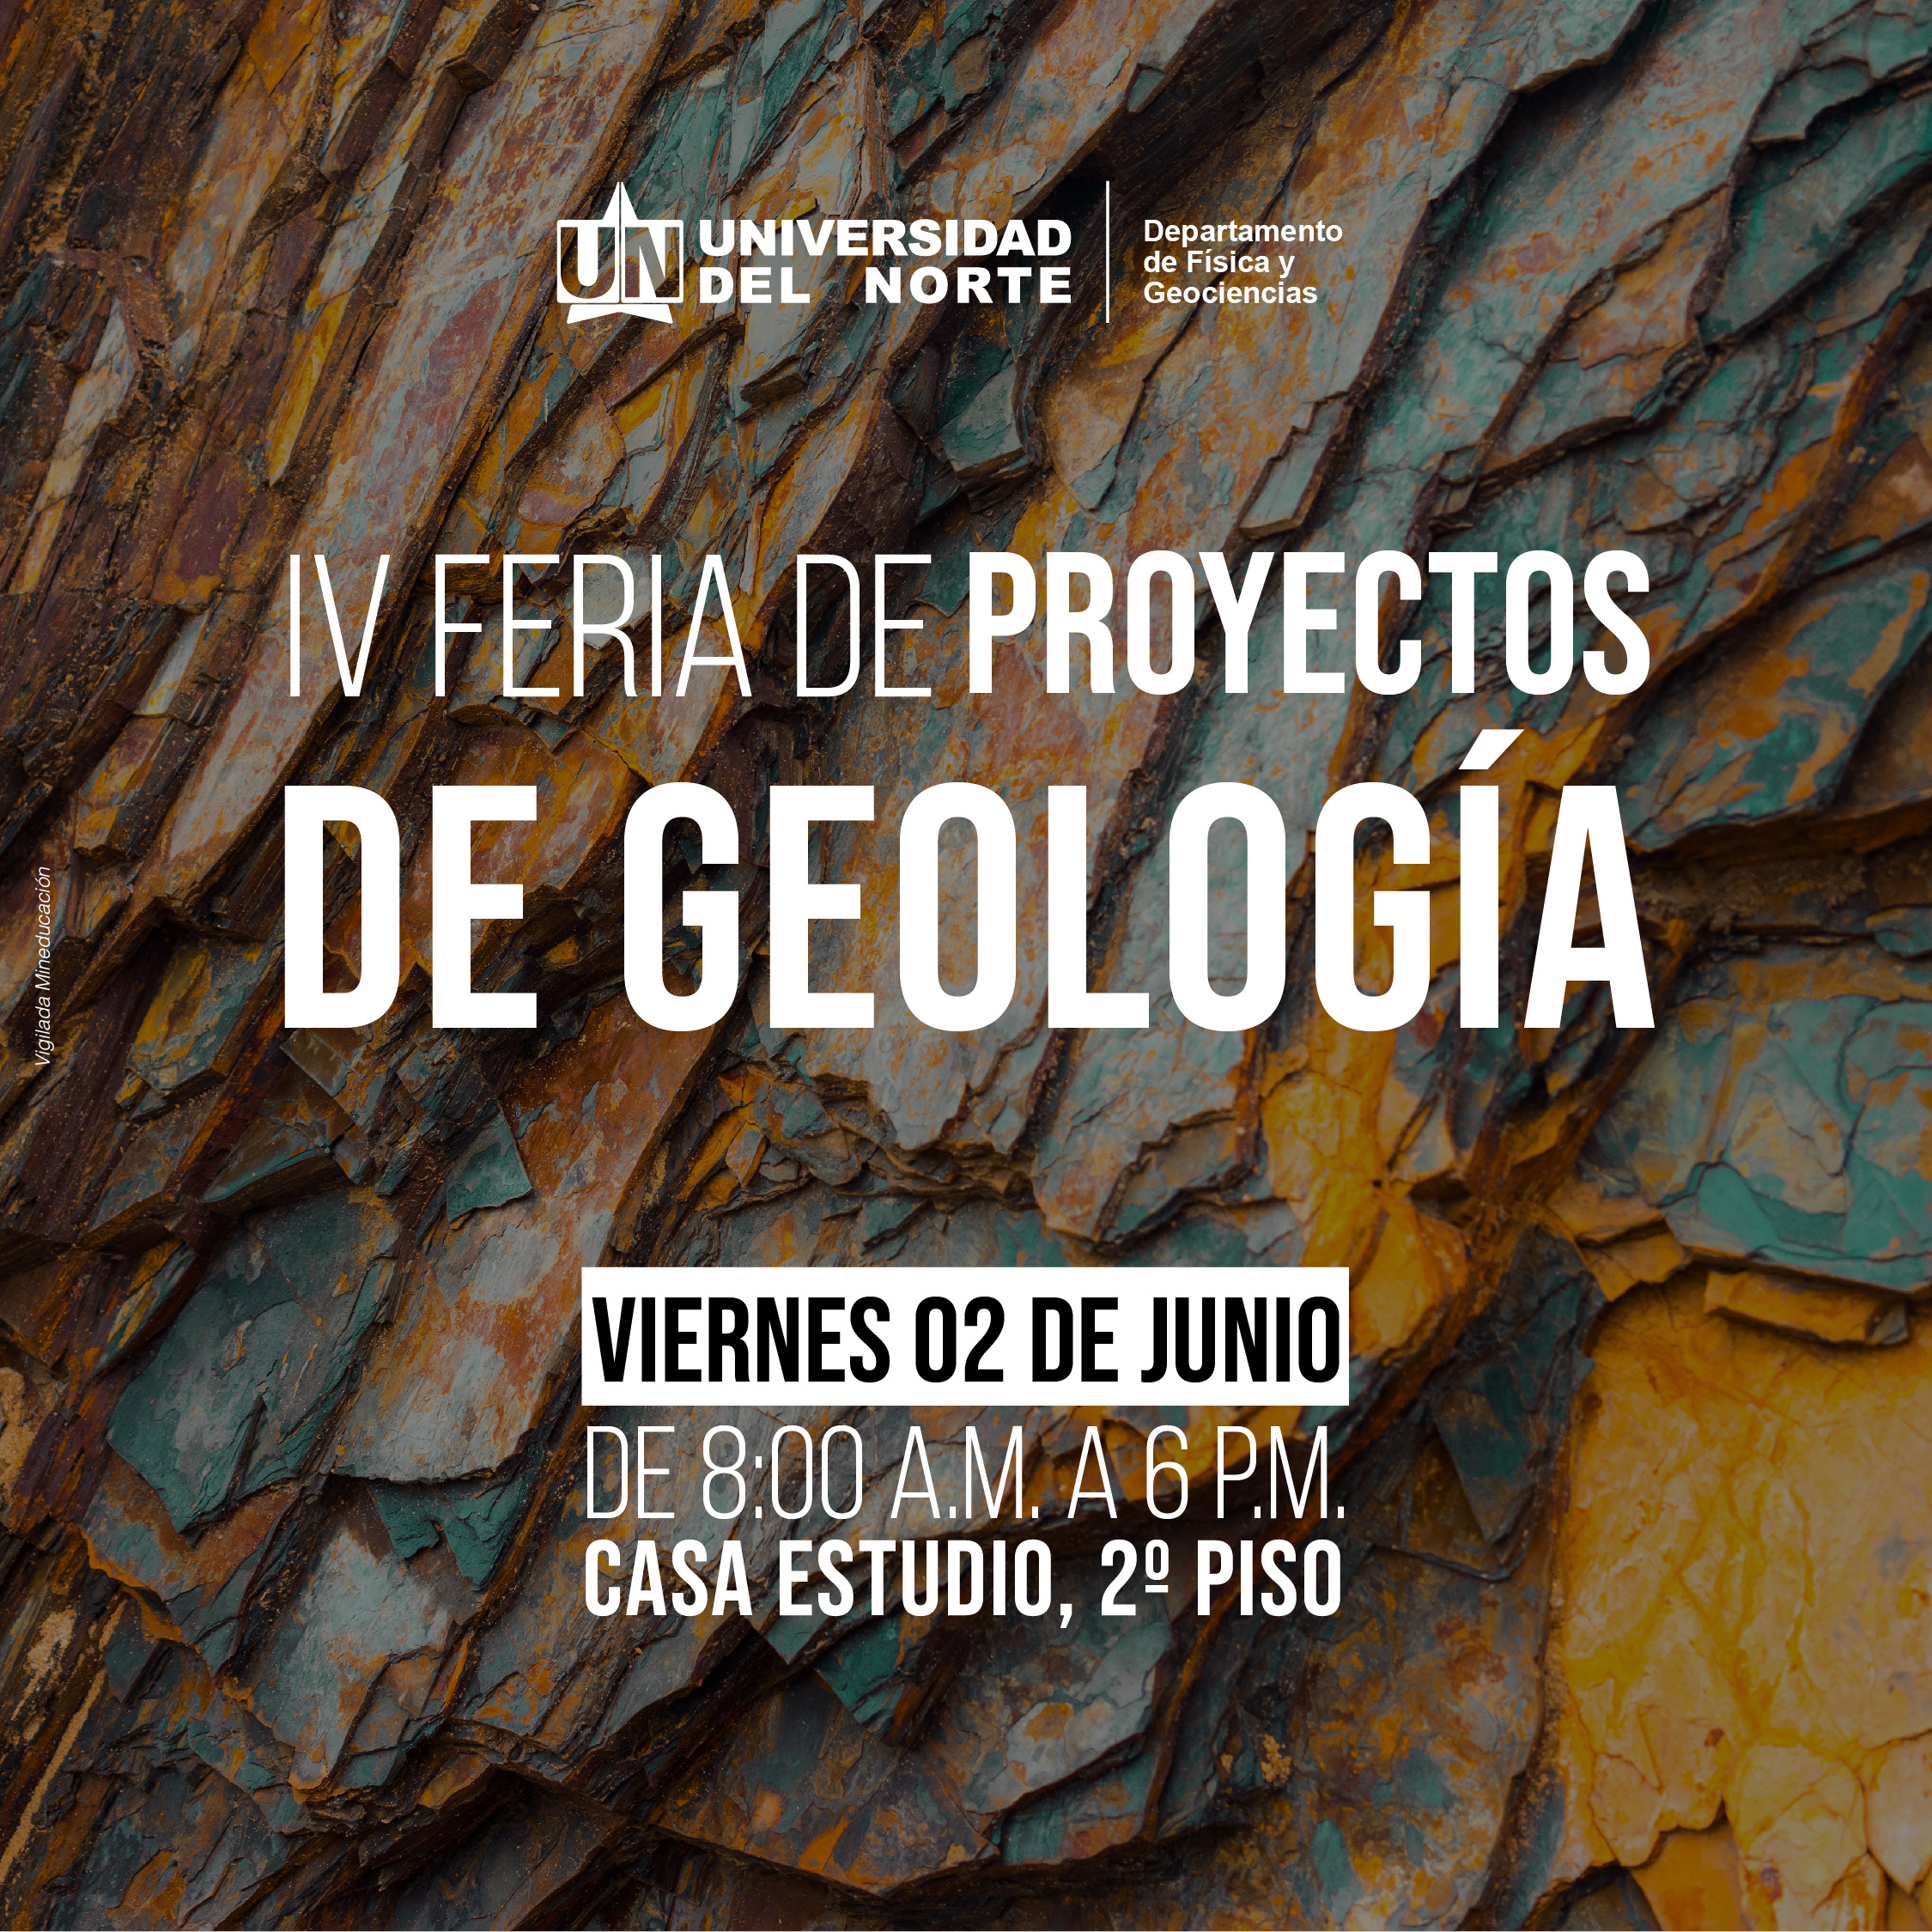 XV Semana Técnica de la Geología, Ingeniería Geológica y Geociencias